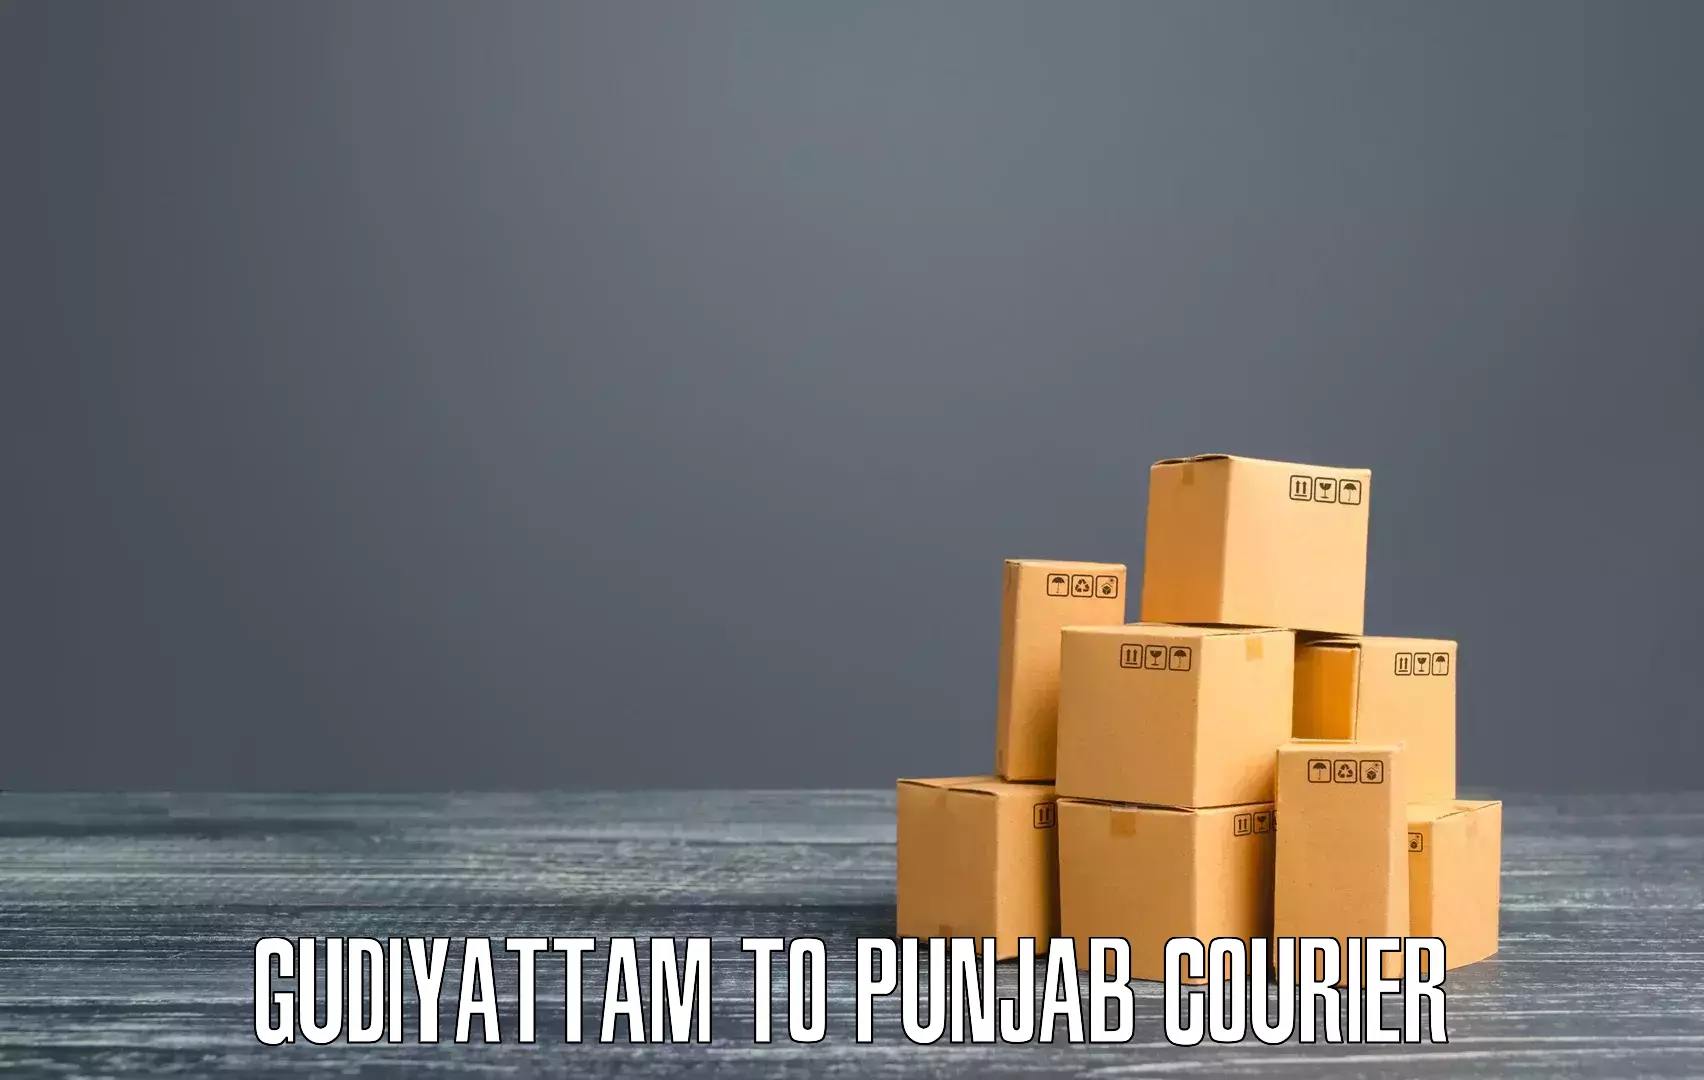 24/7 shipping services Gudiyattam to Jhunir